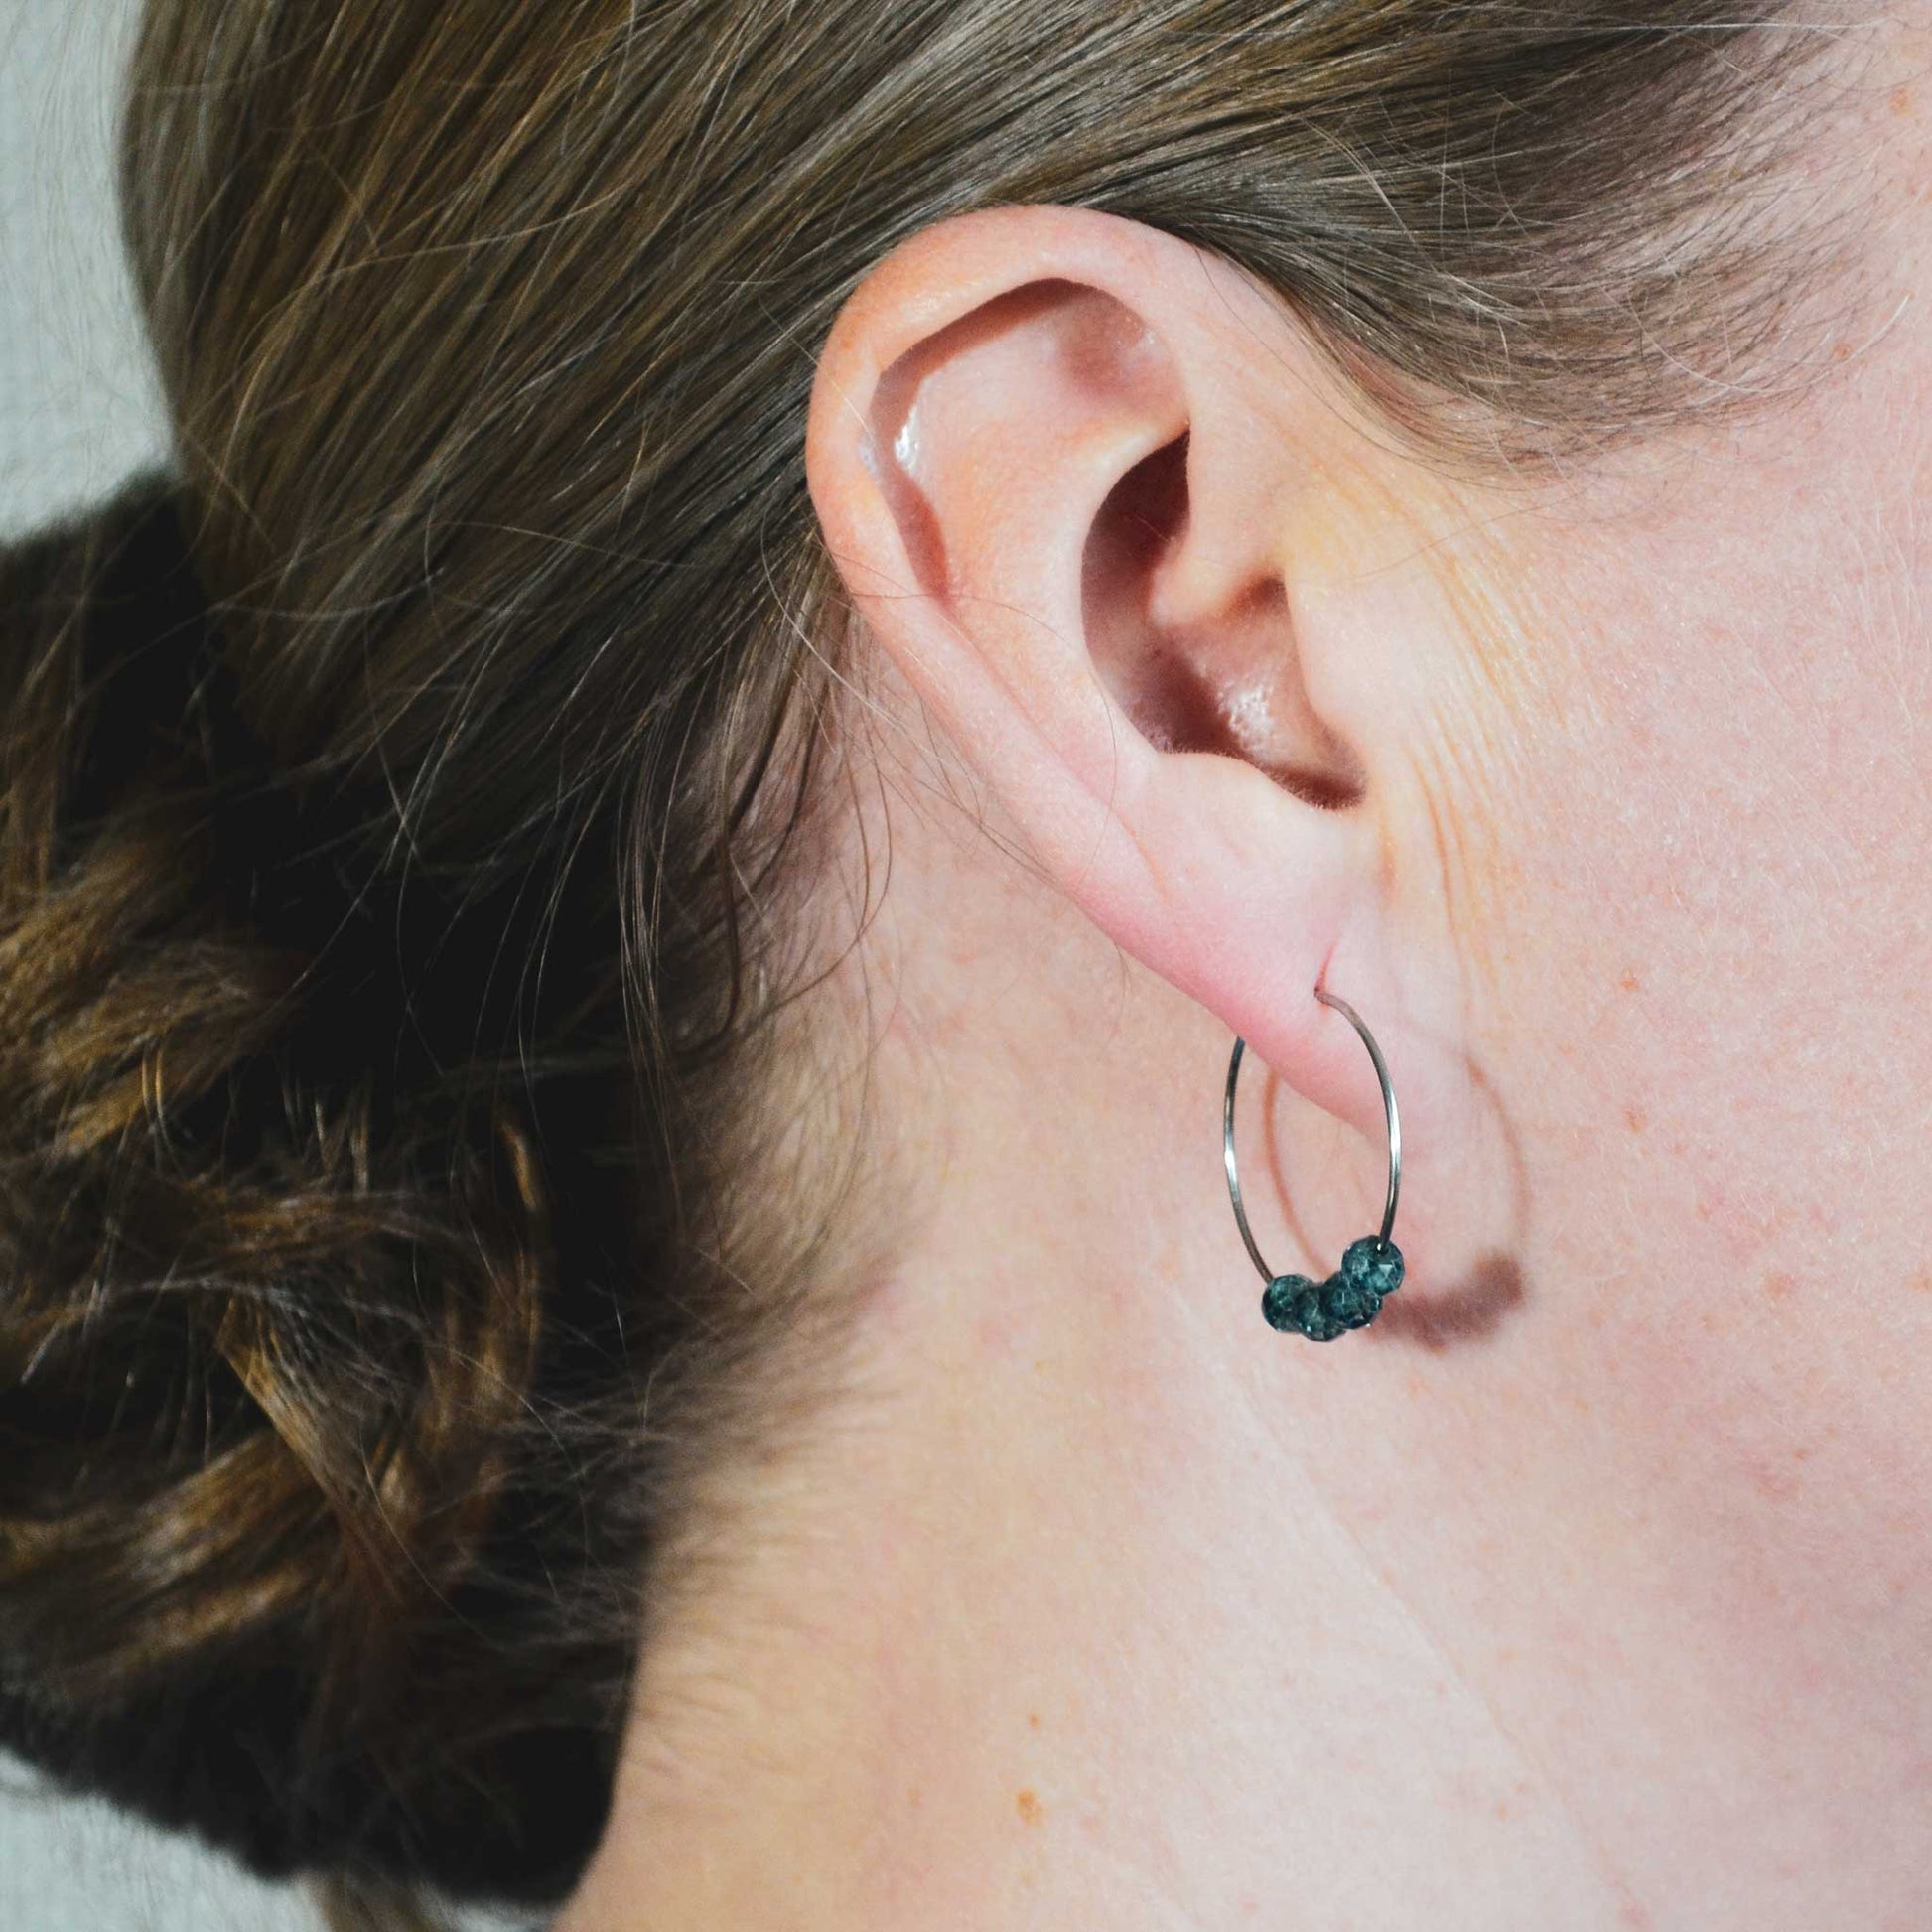 Woman wearing blue Topaz hoop earring in earlobe